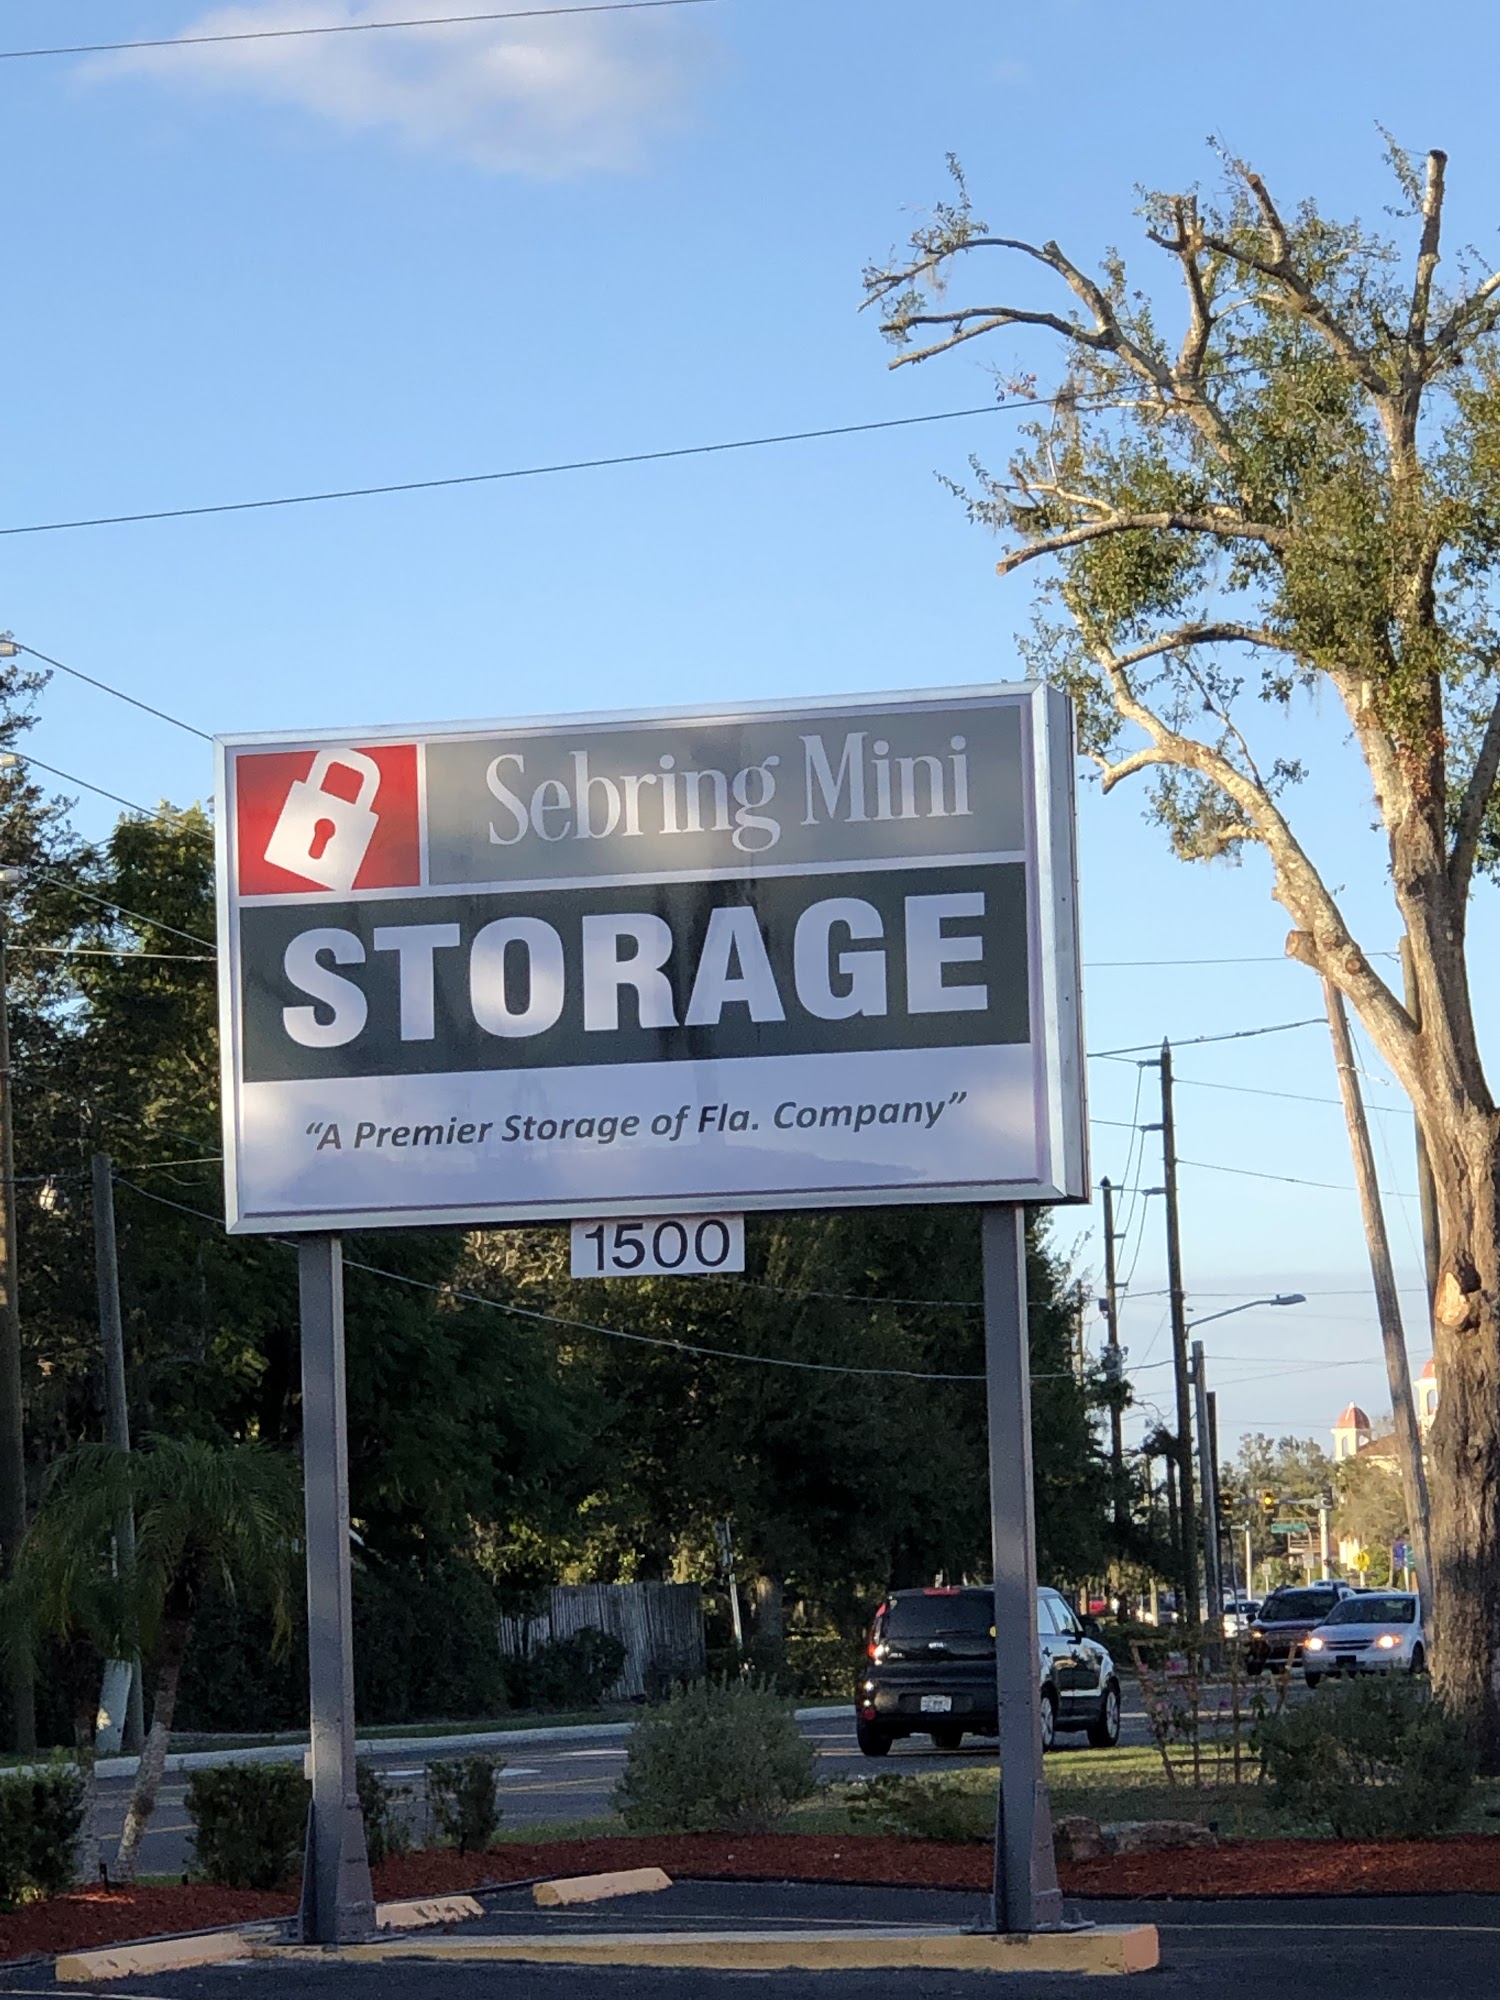 Sebring Mini Storage One